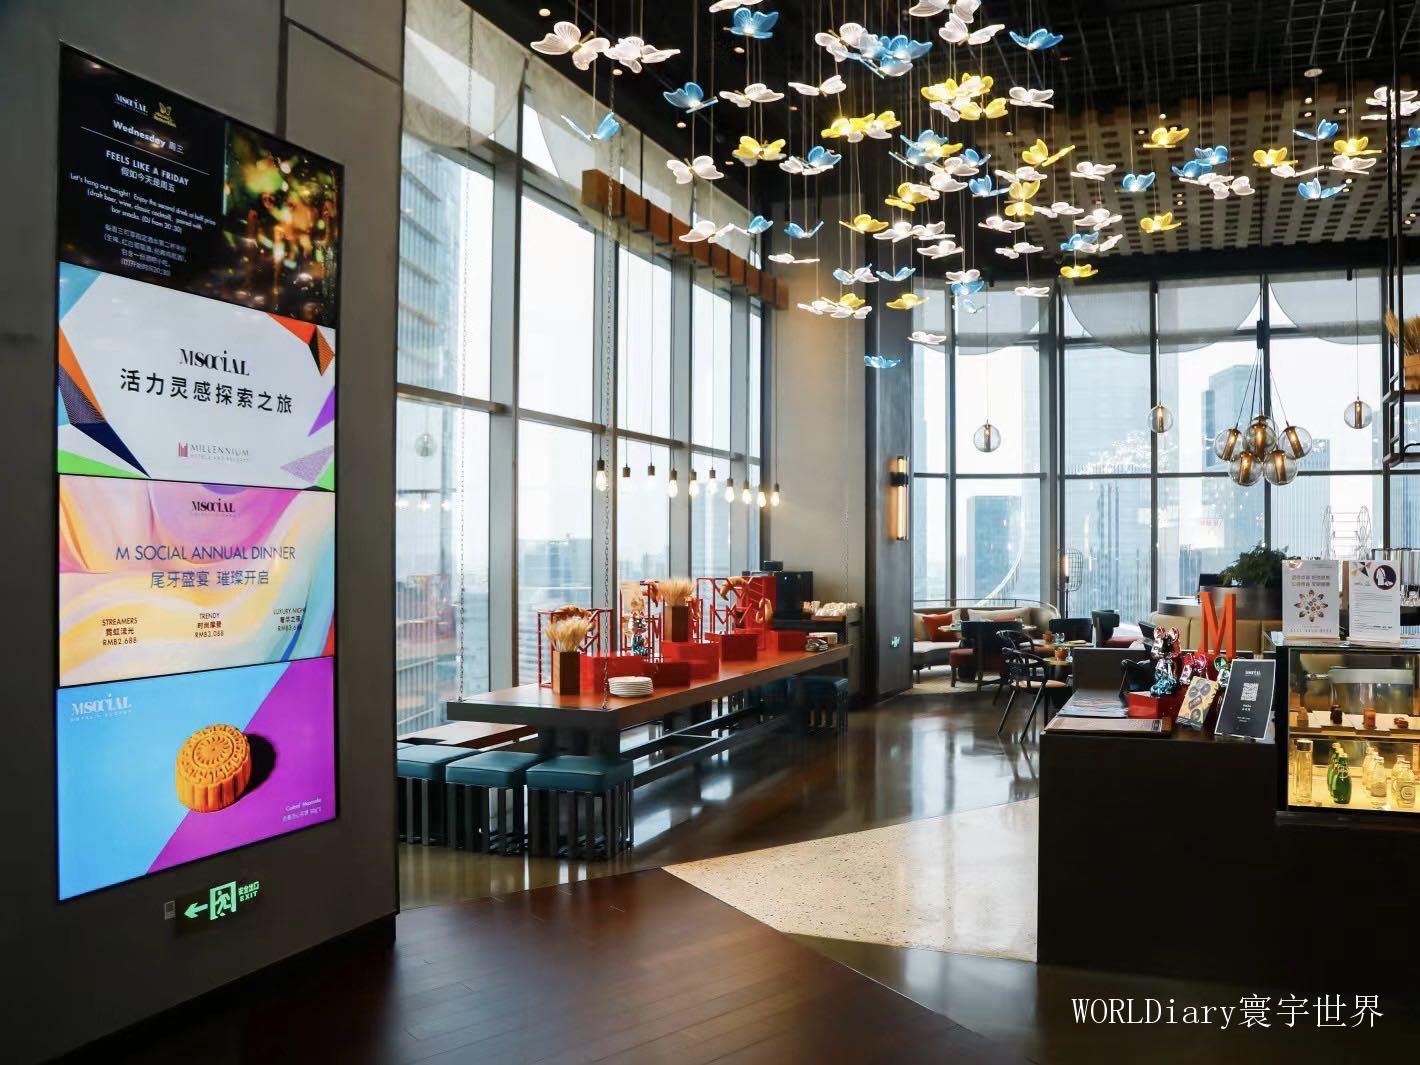 シャングリラ ホテル 成都 (Shangri-La Chengdu) -成都-【 2023年最新の料金比較・口コミ・宿泊予約 】- トリップアドバイザー